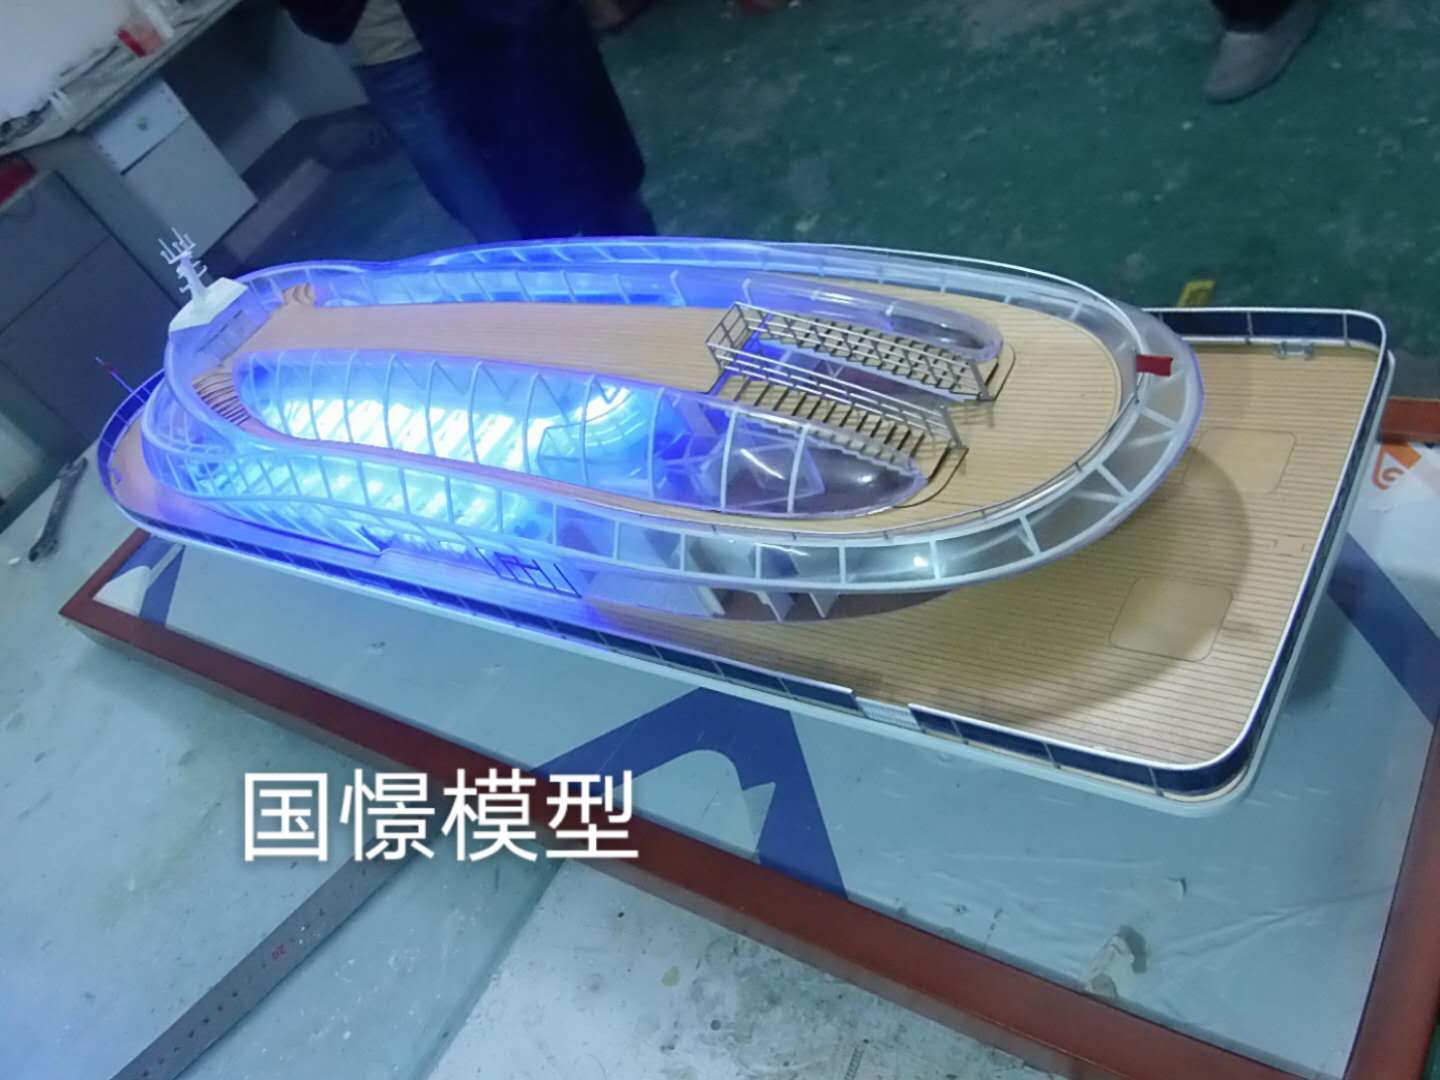 高县船舶模型